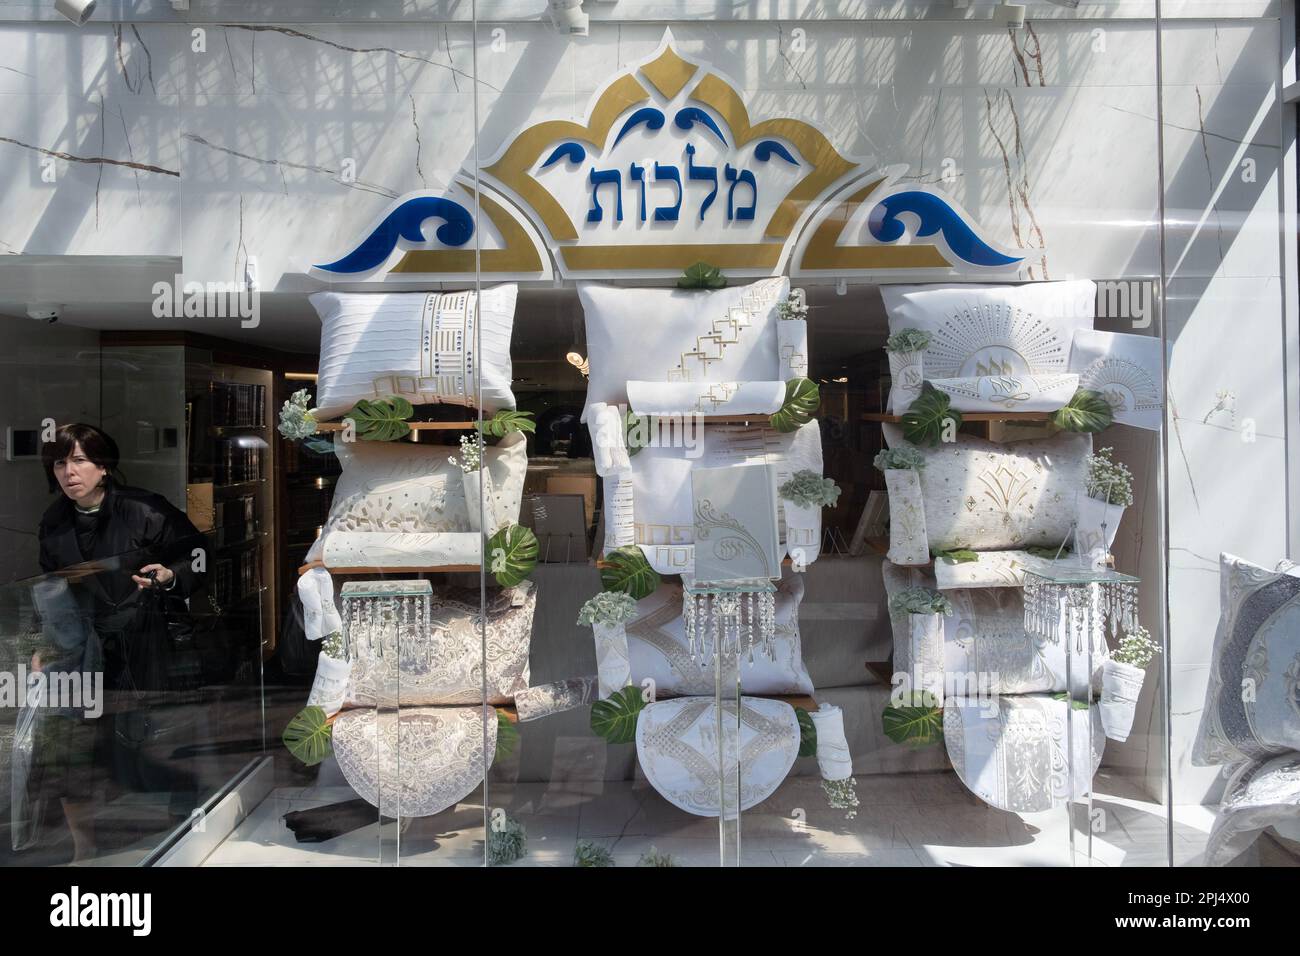 L'esterno di Malchus, un negozio di Judaica su Lee Avenue a Brooklyn, New York City, che mostra oggetti di Pasqua come cuscini per il Seder e le copertine di matzoh Foto Stock